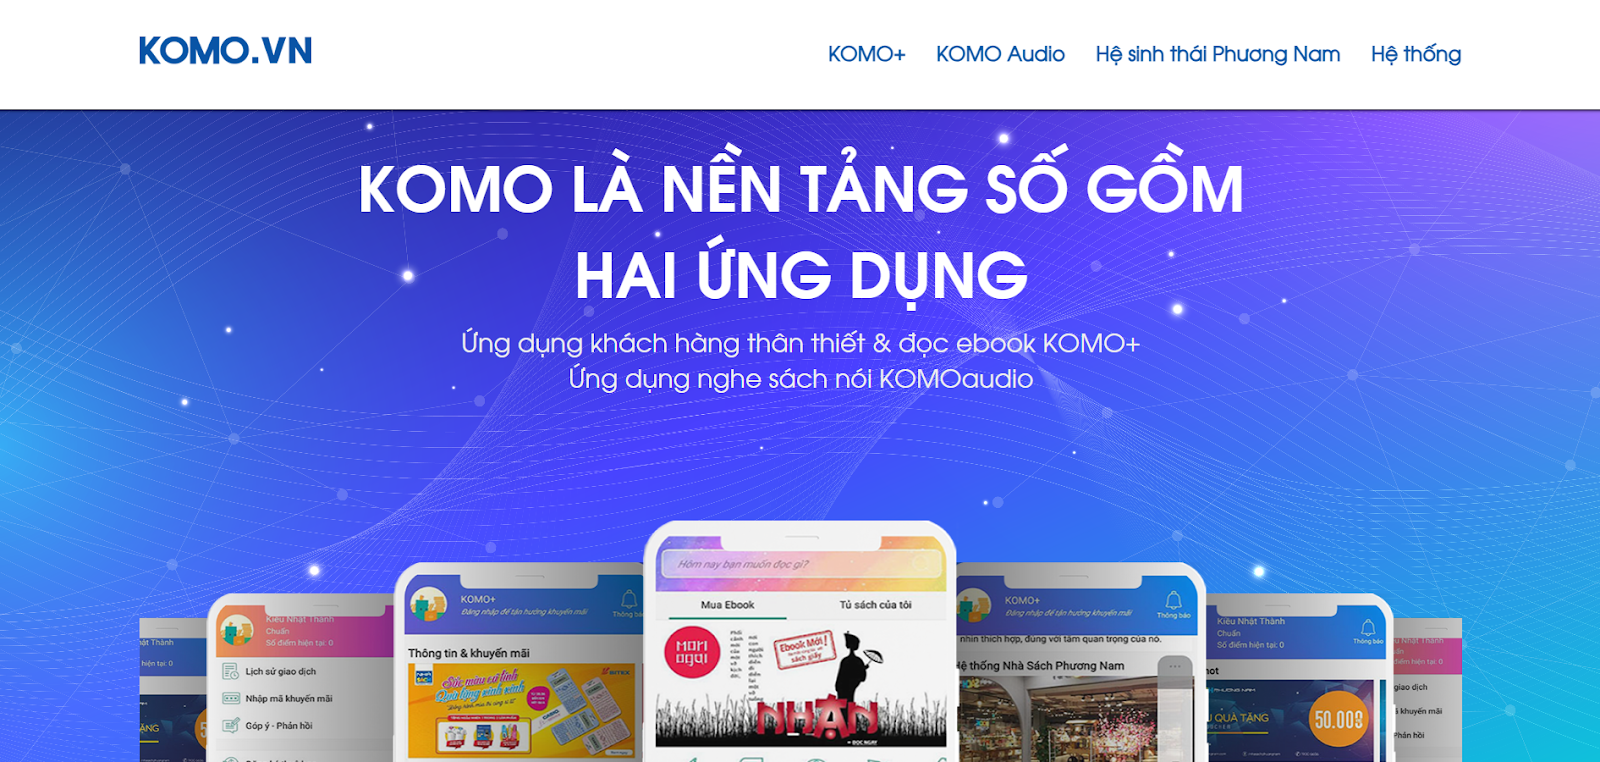 Komo.vn là một trang web đọc sách miễn phí.